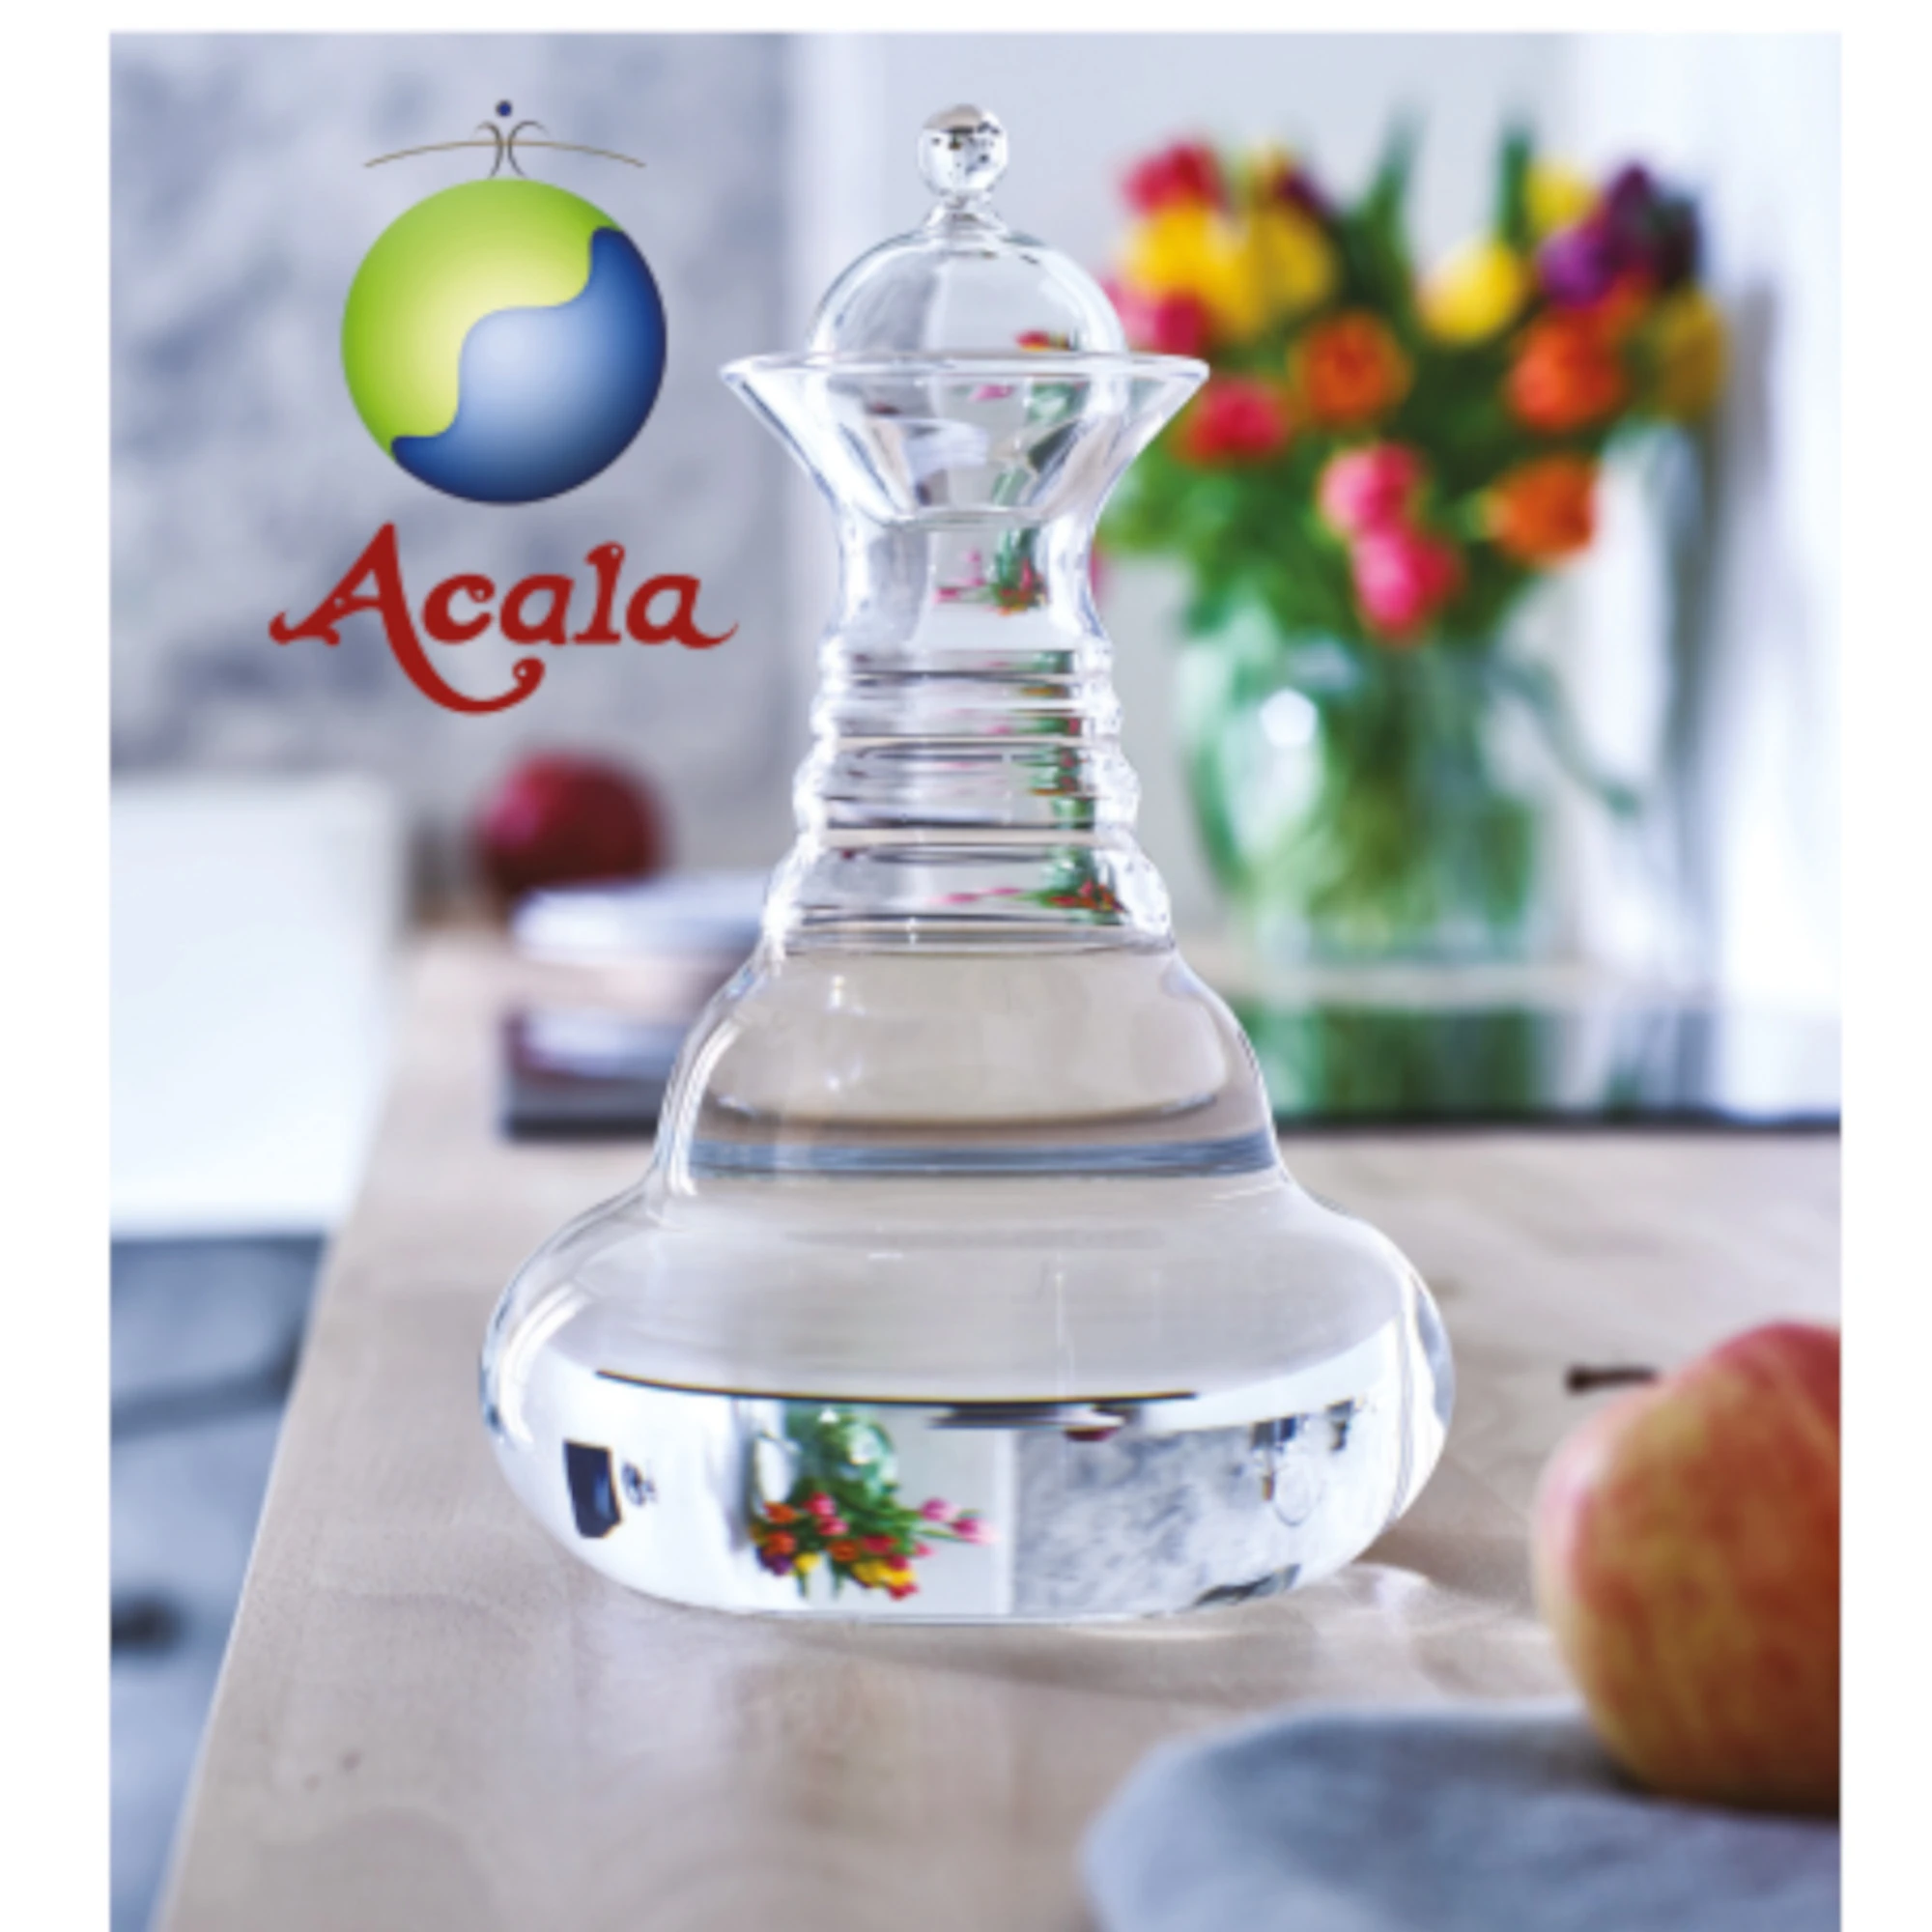 Zu sehen ist die Alladin Glas Karaffe von Acala mit Glasdeckel. Sie steht auf einem Tisch, man sieht Obst und einen bunten Blumenstrauß. Links neben der Karaffe sieht man das Acala Logo.